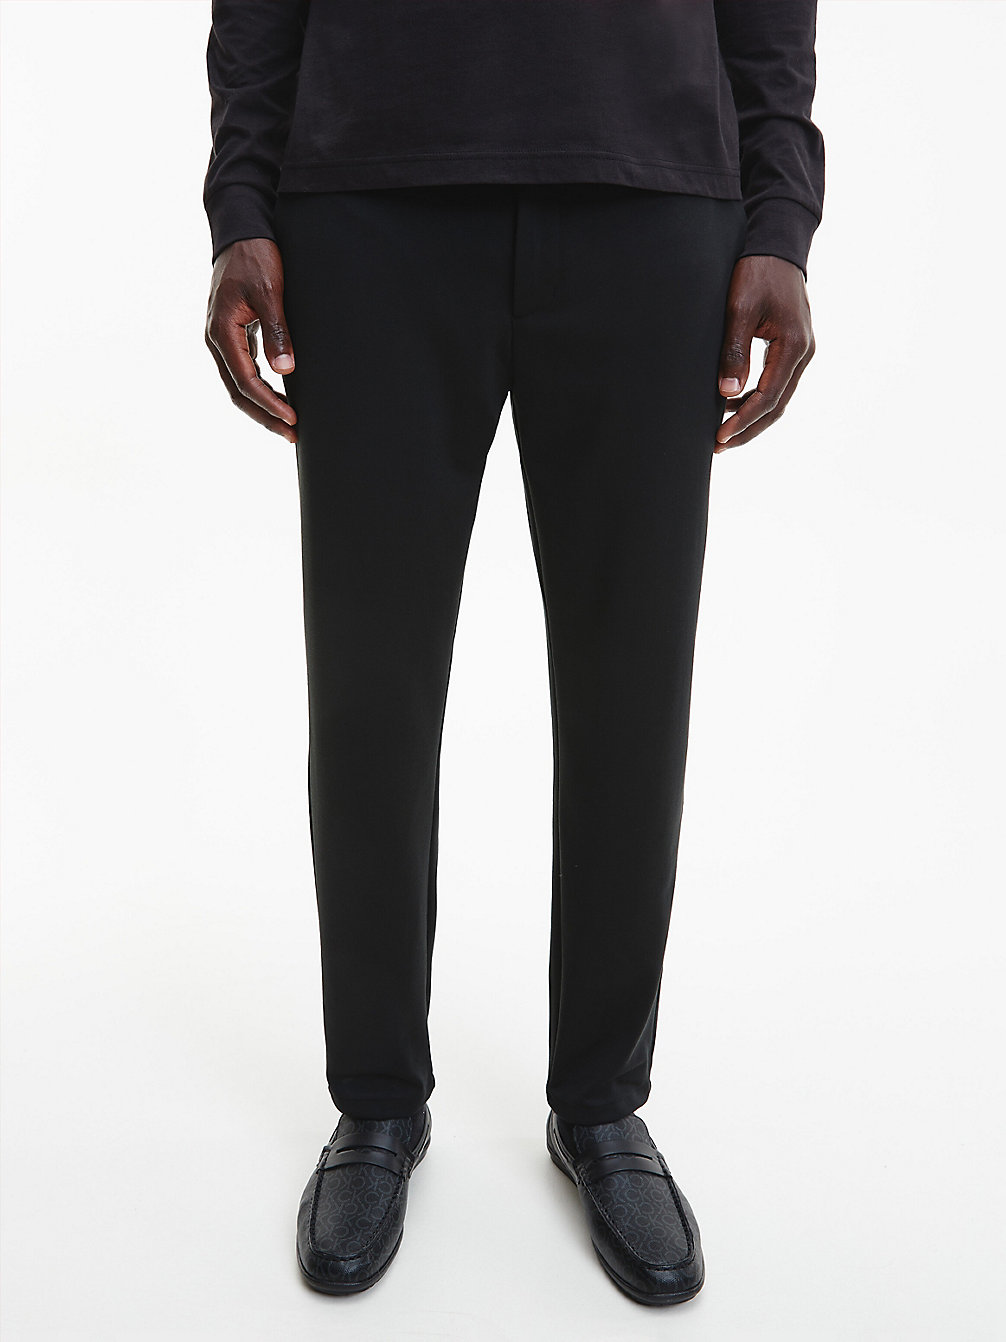 CK BLACK > Zwężane Spodnie Z Przetworzonego Poliestru > undefined Mężczyźni - Calvin Klein